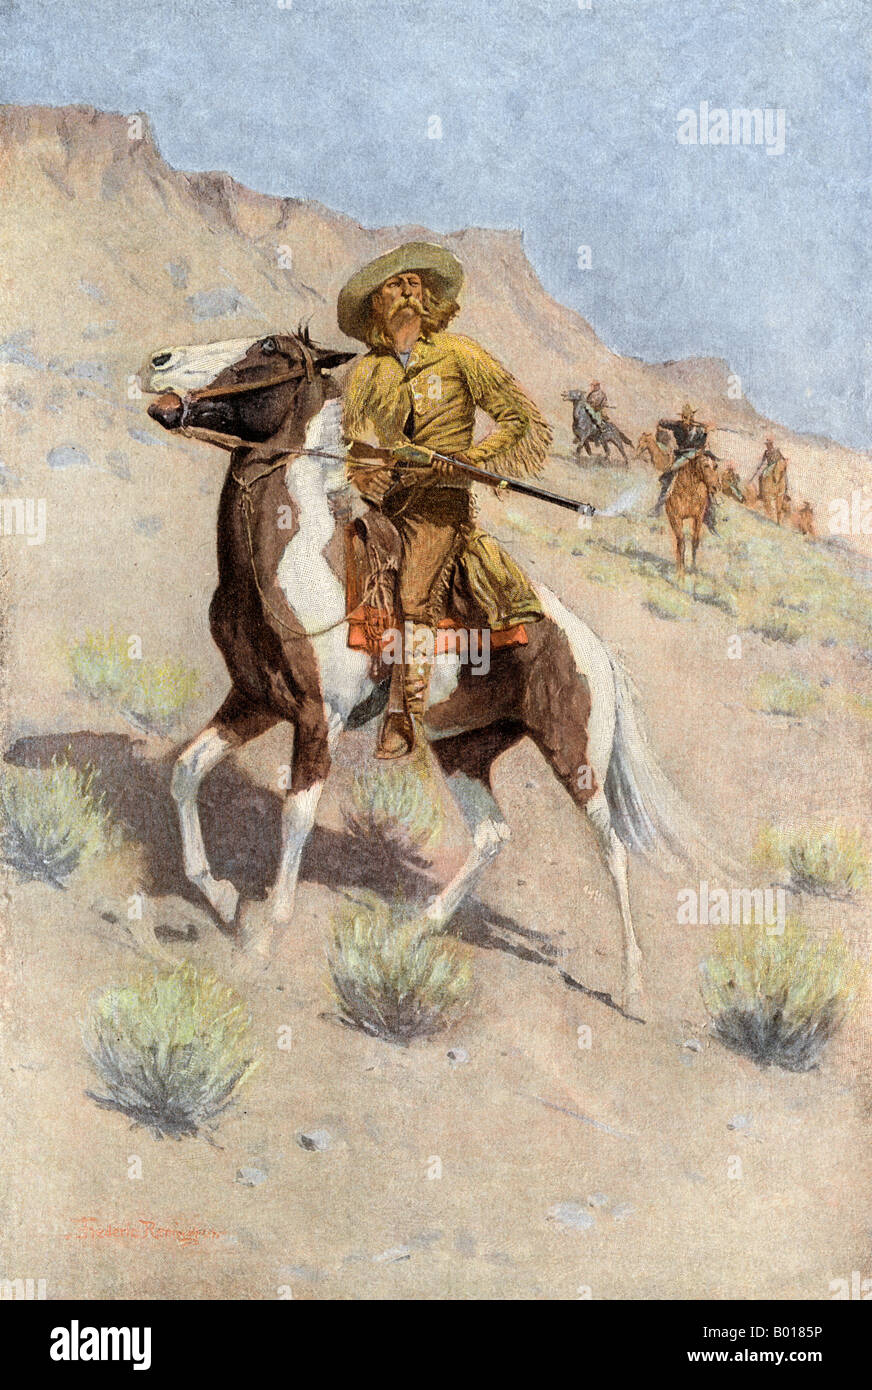 Der Scout ein frontiersman durch die US-Armee in die Öffnung des Westens beschäftigt. Farbe Grauwerte von Frederic Remington Abbildung Stockfoto